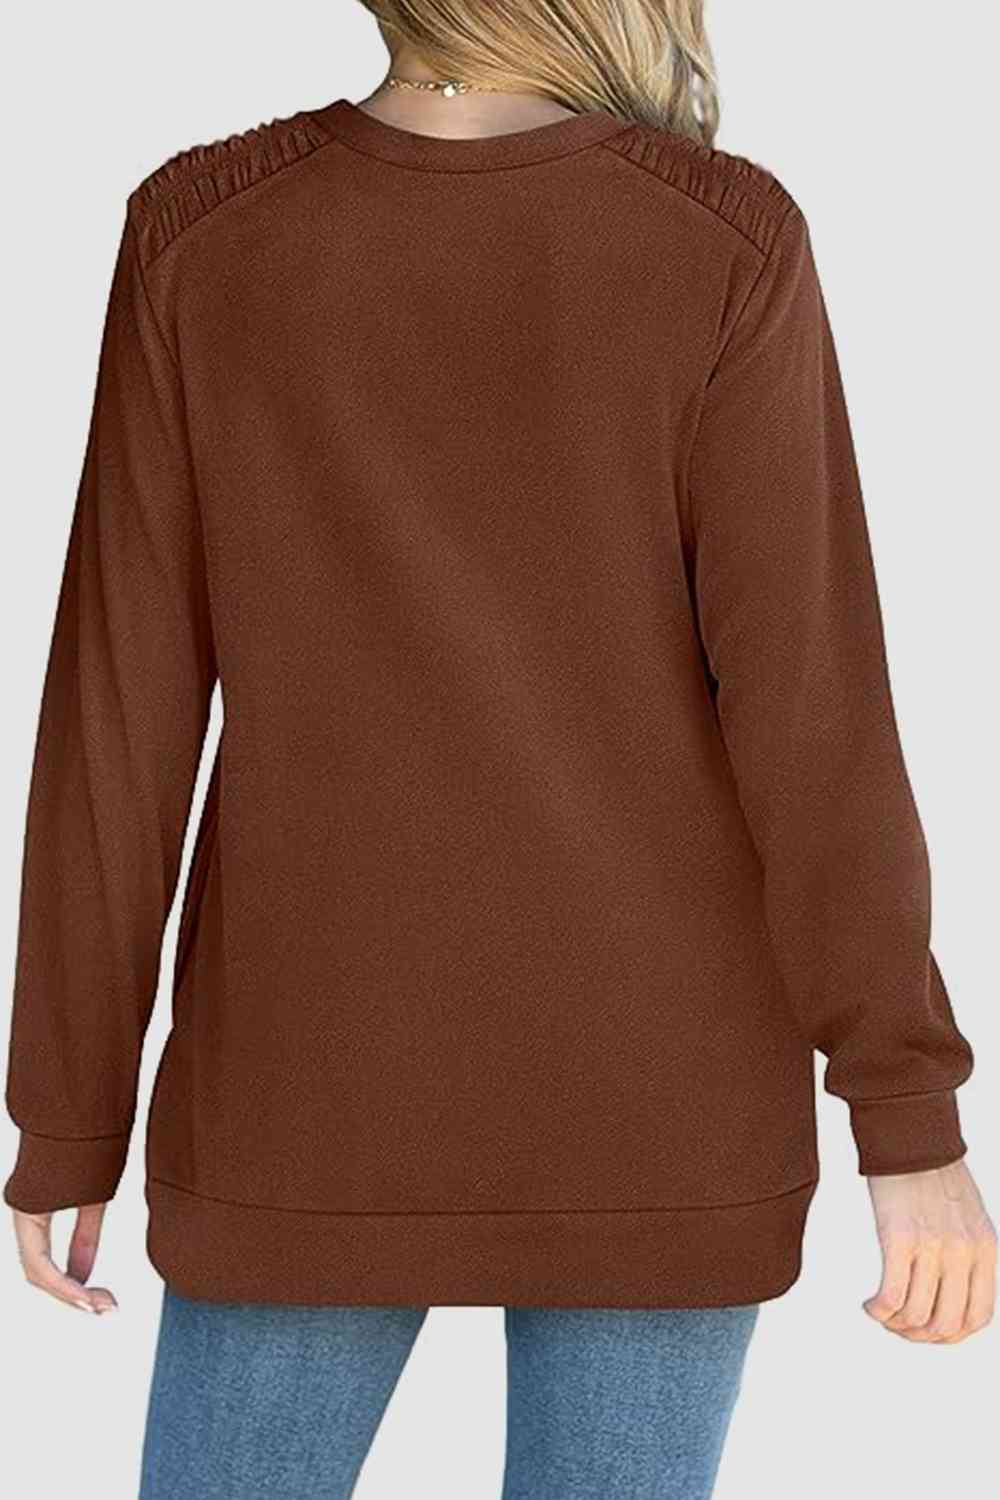 Top A Ruched Basic Round Neck Sweatshirt